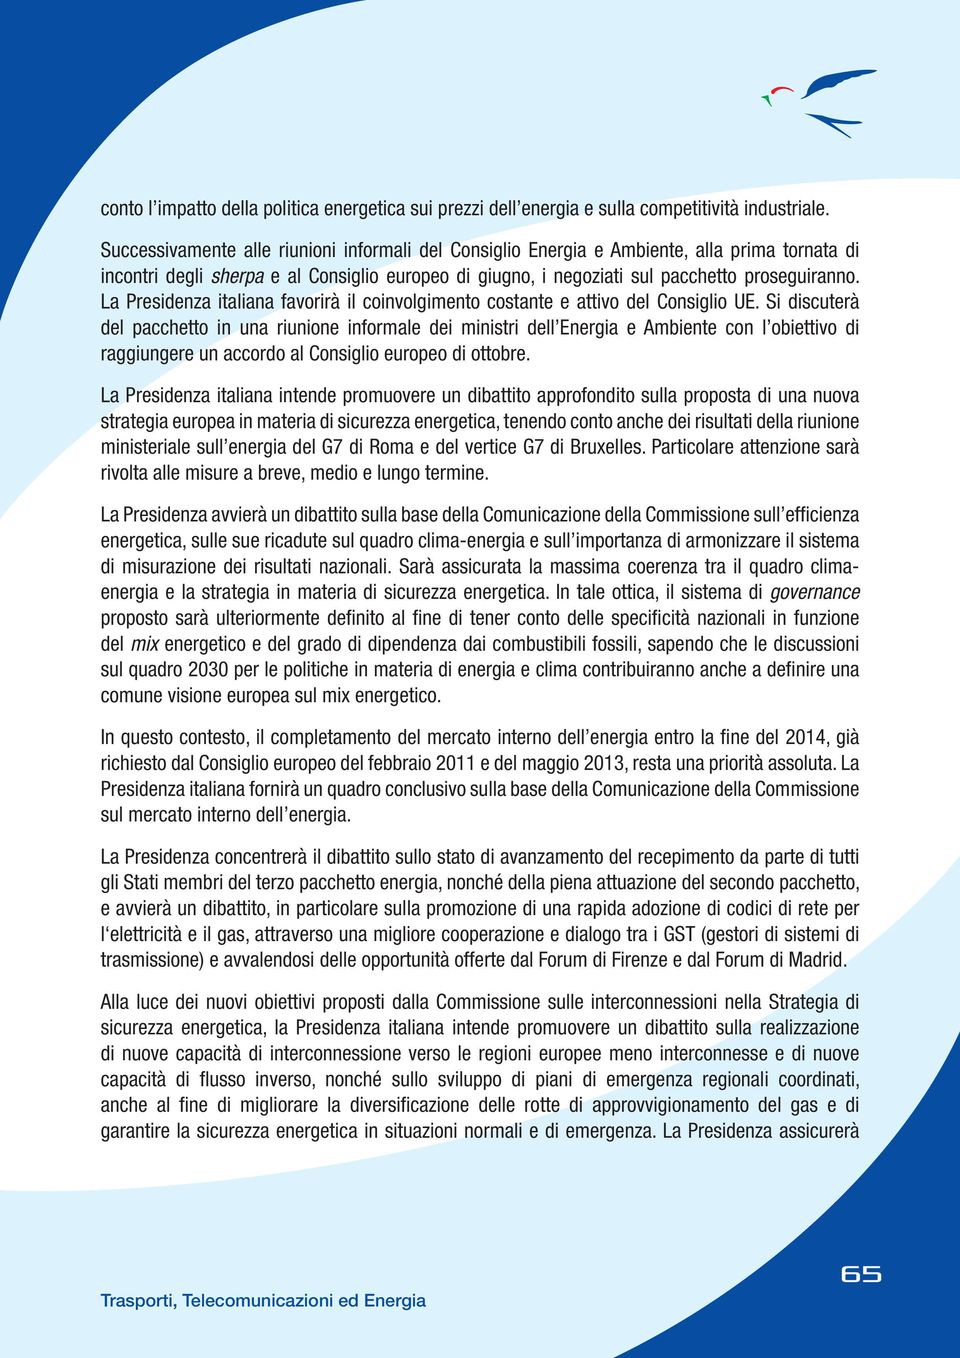 La Presidenza italiana favorirà il coinvolgimento costante e attivo iglio UE.